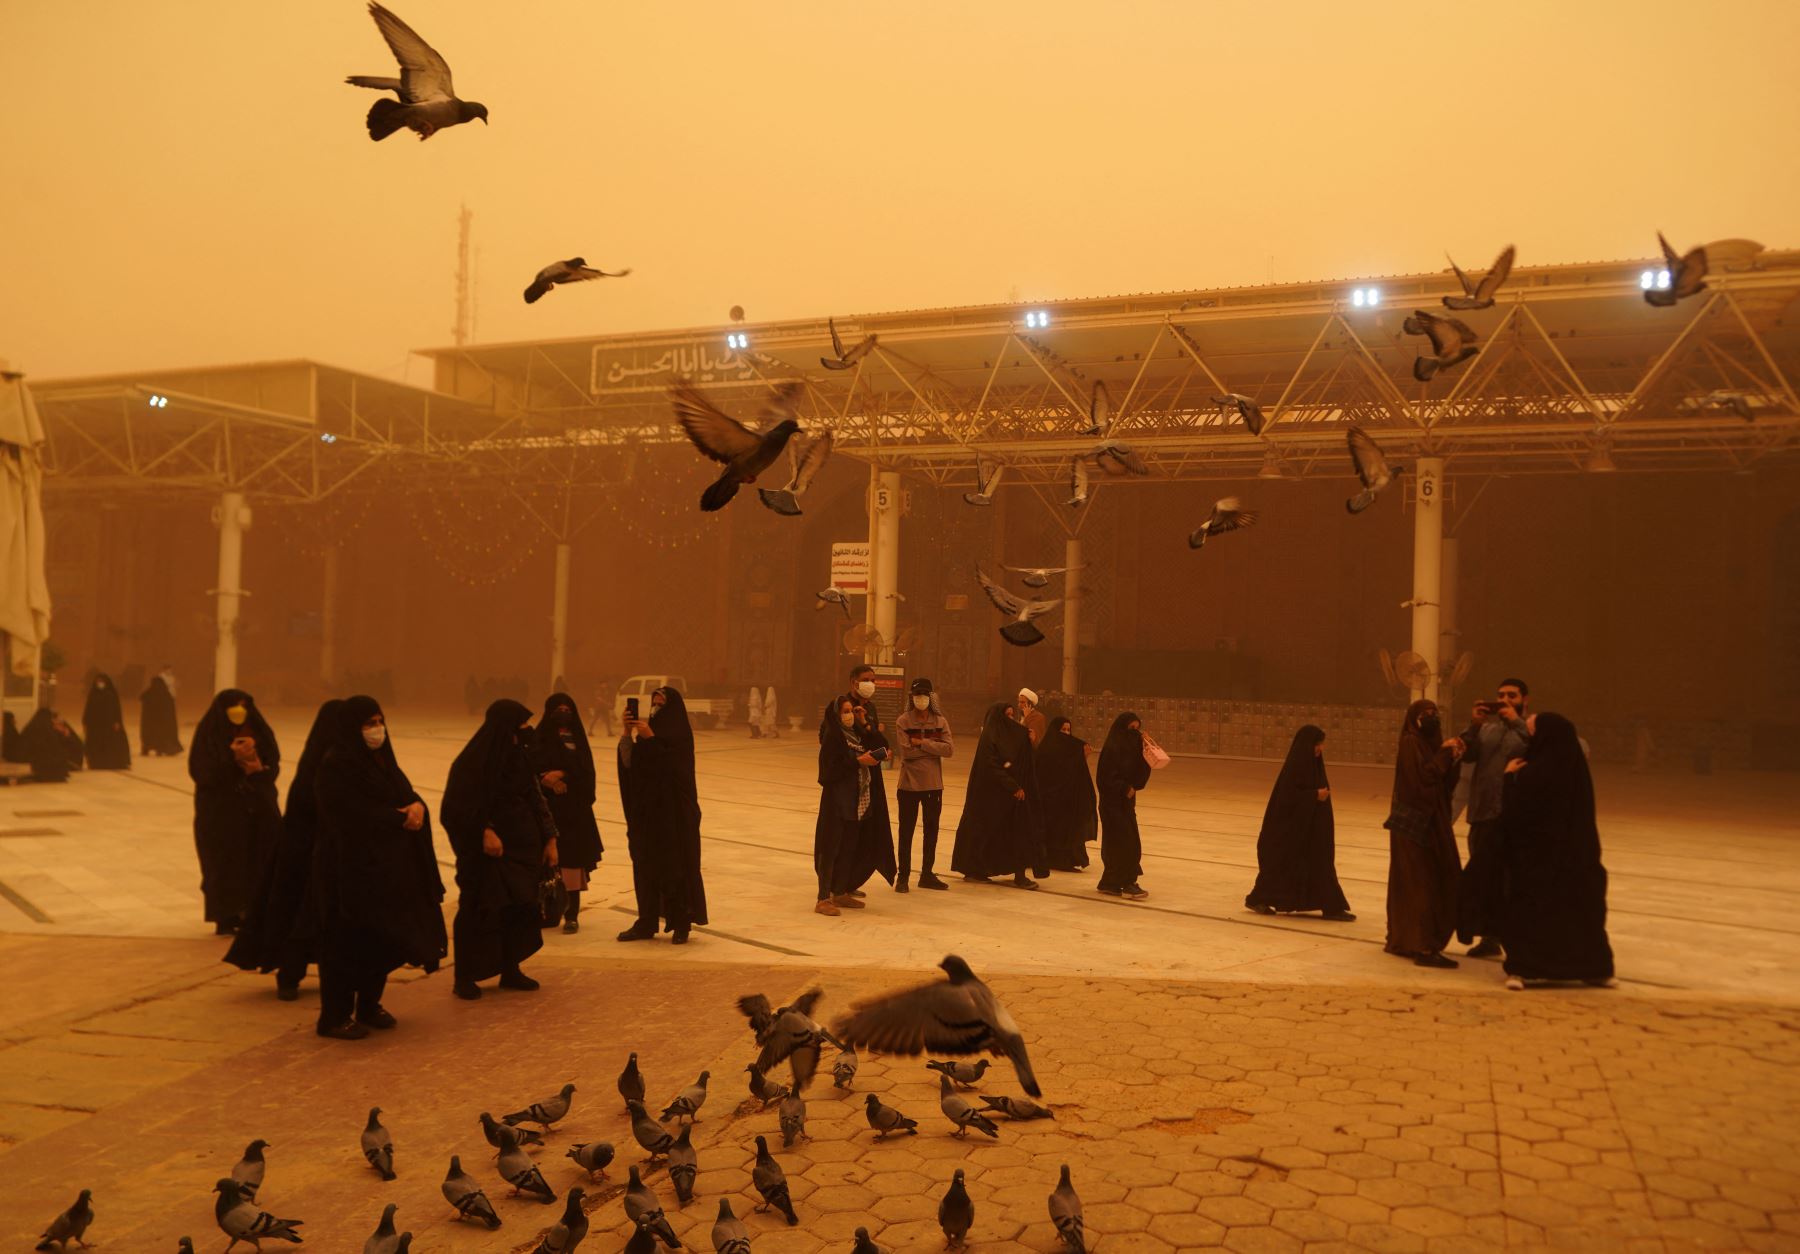 Los visitantes de Irán toman fotografías mientras alimentan a las palomas durante una tormenta de arena en la ciudad santa de Najaf en Irak el 16 de mayo de 2022.
Foto: ANDINA/ AFP